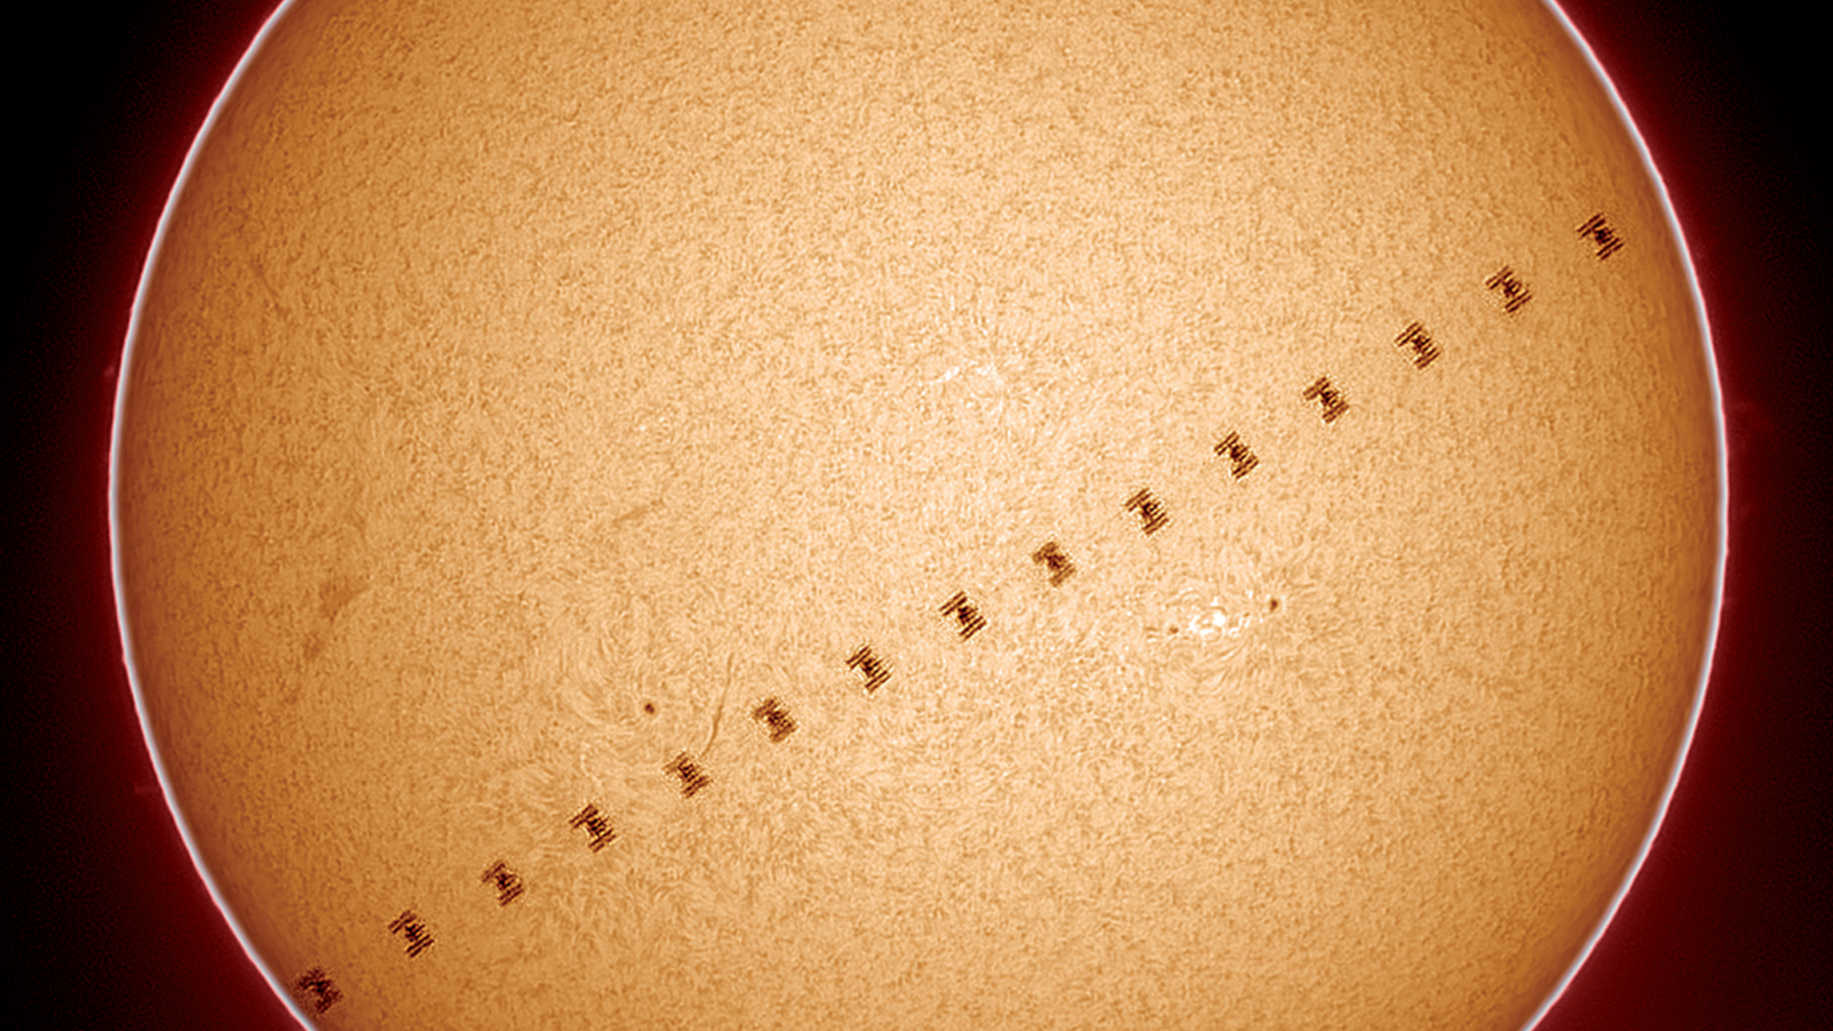 Transiten av Internationella rymdstationen (ISS), här dokumenterad i Hα-ljus, inträffade den 17 juni 2017 klockan 18:57:03, när solen stod 64,7 grader över den södra stjärnhimlens horisont. Avståndet från ISS till observationsplatsen var 451,6 kilometer, vilket gjorde att passagen varade endast 0,6 sekunder. Rymdstationen framstod som förhållandevis stor. Bilden togs med ett Coronado Solarmax60, och övrig utrustning kan ses i Fig. 3. Presentationen är ett montage av 16 bilder. U. Dittler